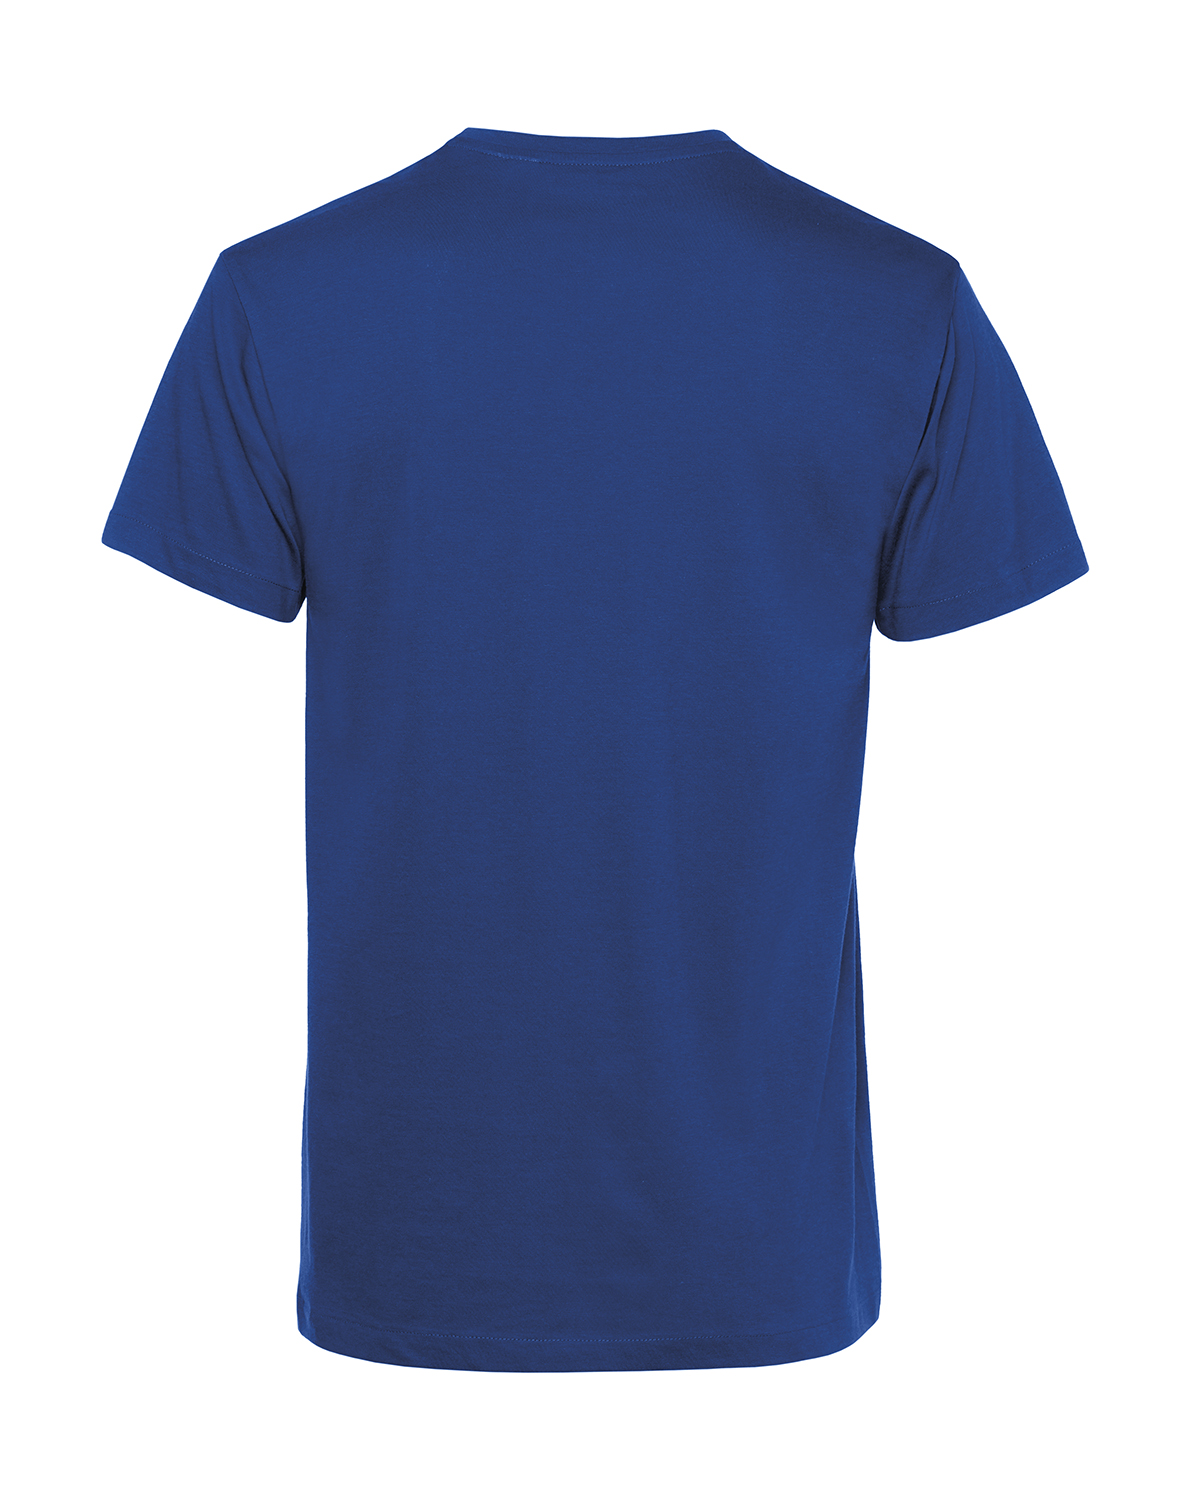 Nachhaltiges T-Shirt Herren 2Takter - Lieber Rost statt Plastik Schwalbe